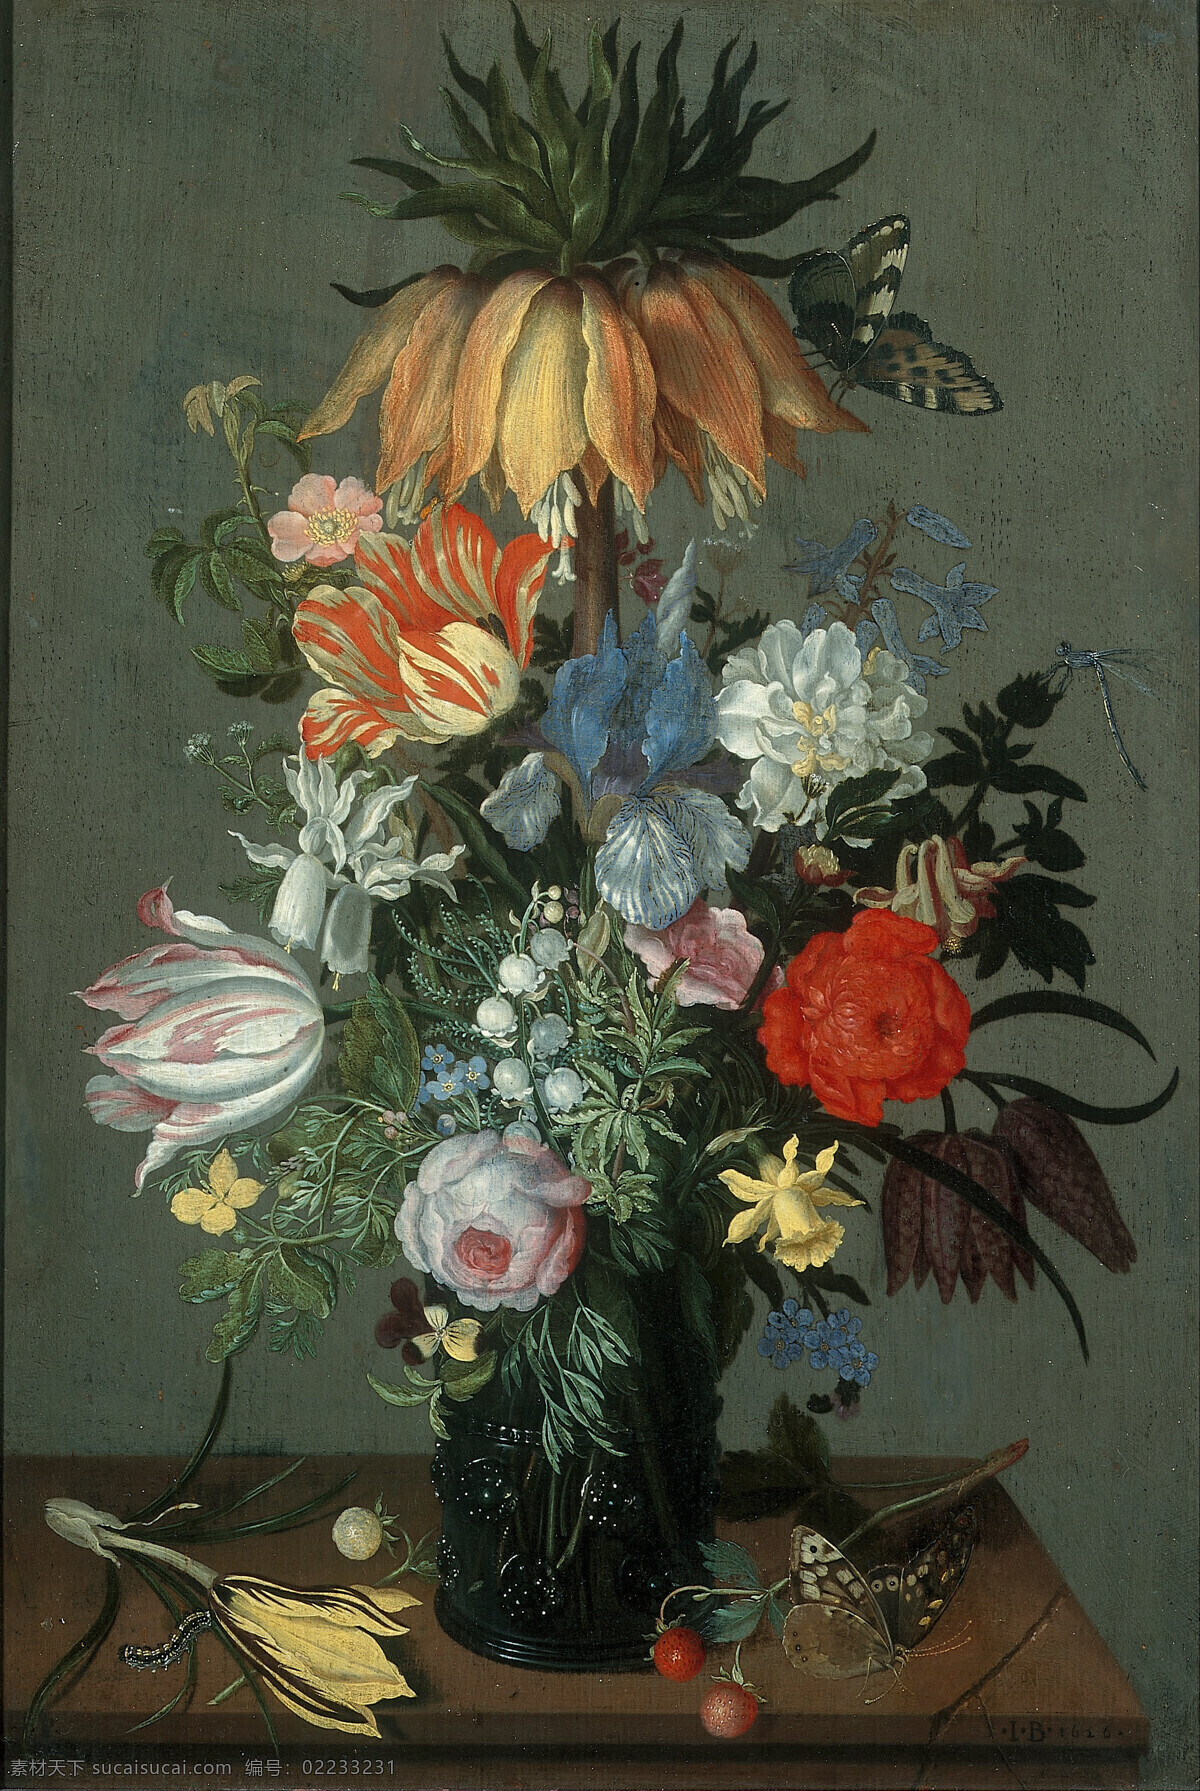 永恒之美 静物鲜花 混搭鲜花 黑色花瓶 蜻蜓 蝴蝶 红苺 19世纪油画 油画 绘画书法 文化艺术